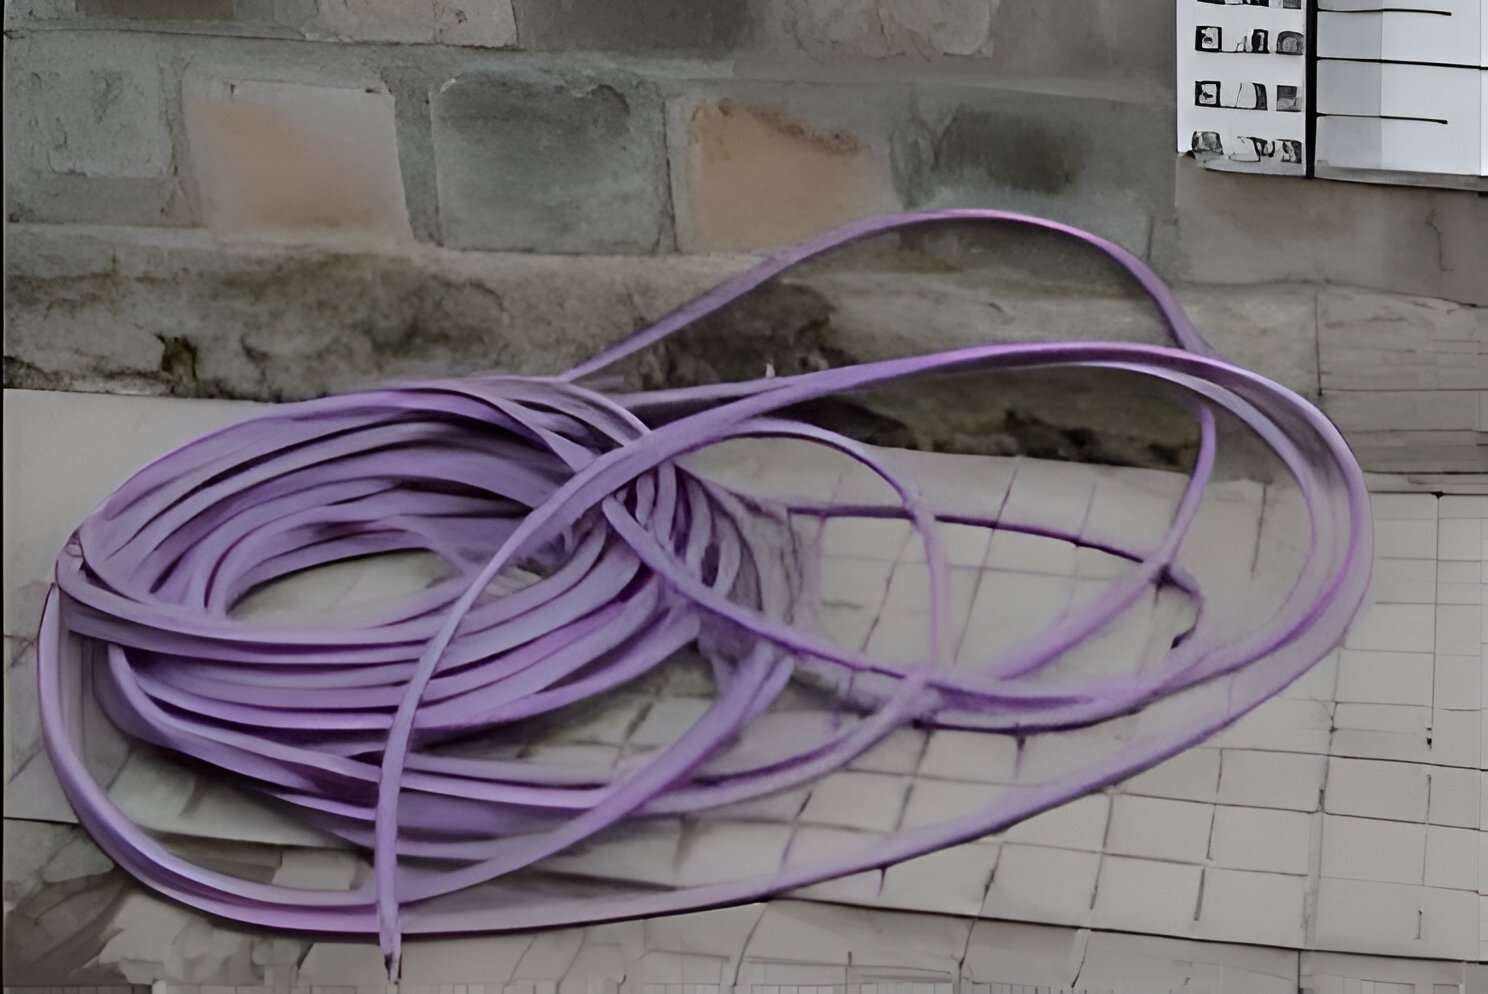 Recuperan cables robados en Papel Prensa: un detenido